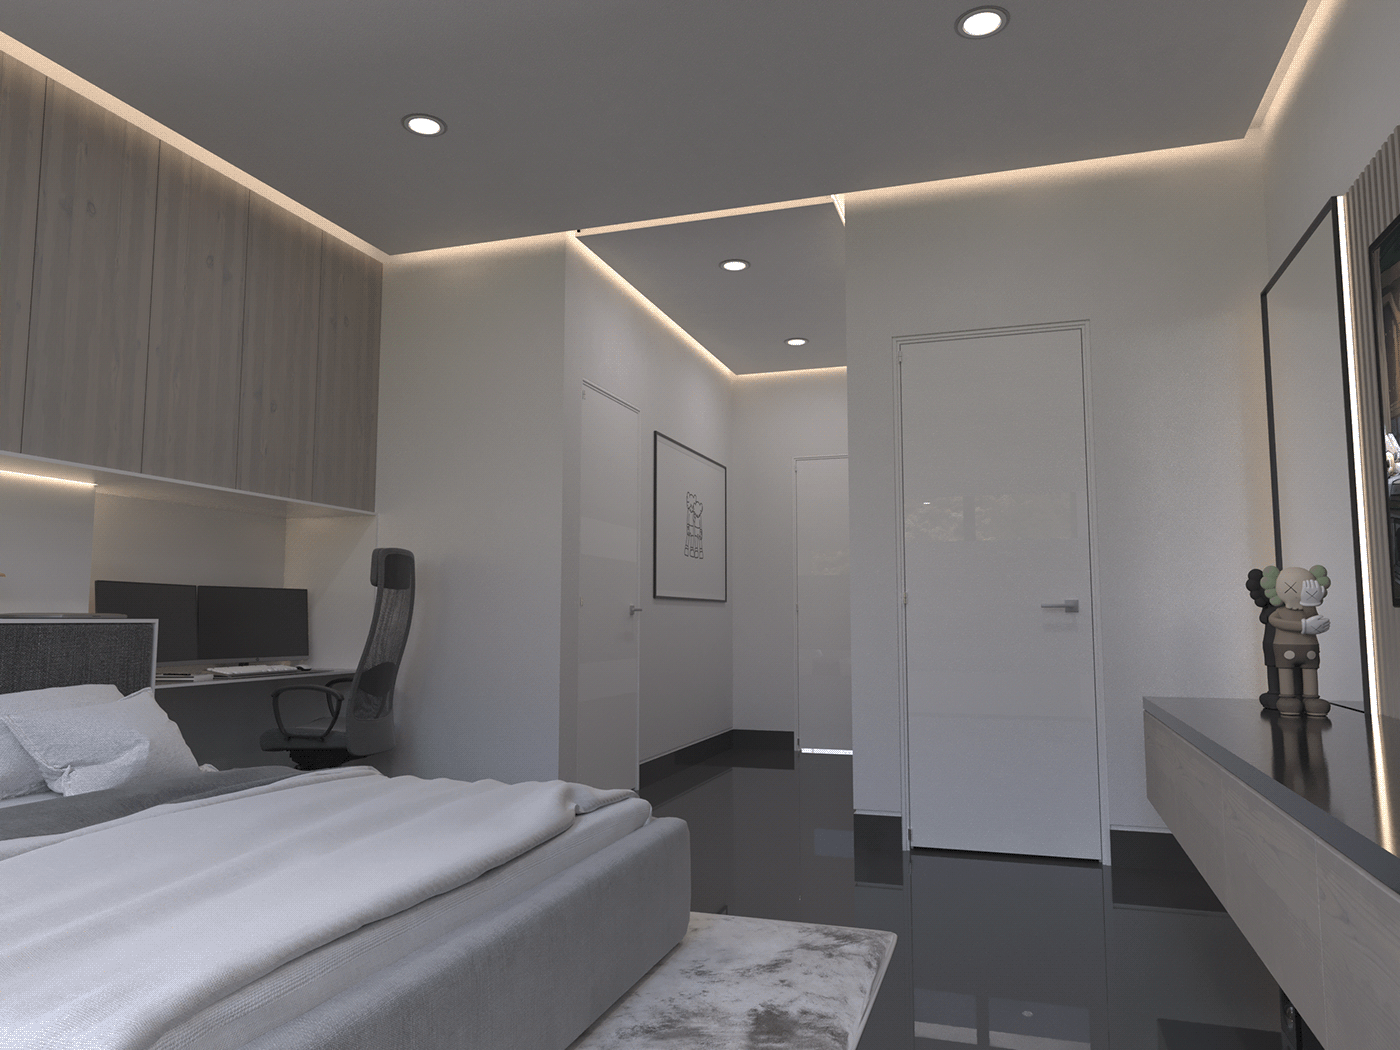 3d modeling architecture bedroom interior design  kaws minimalist modern Remodeling Render room